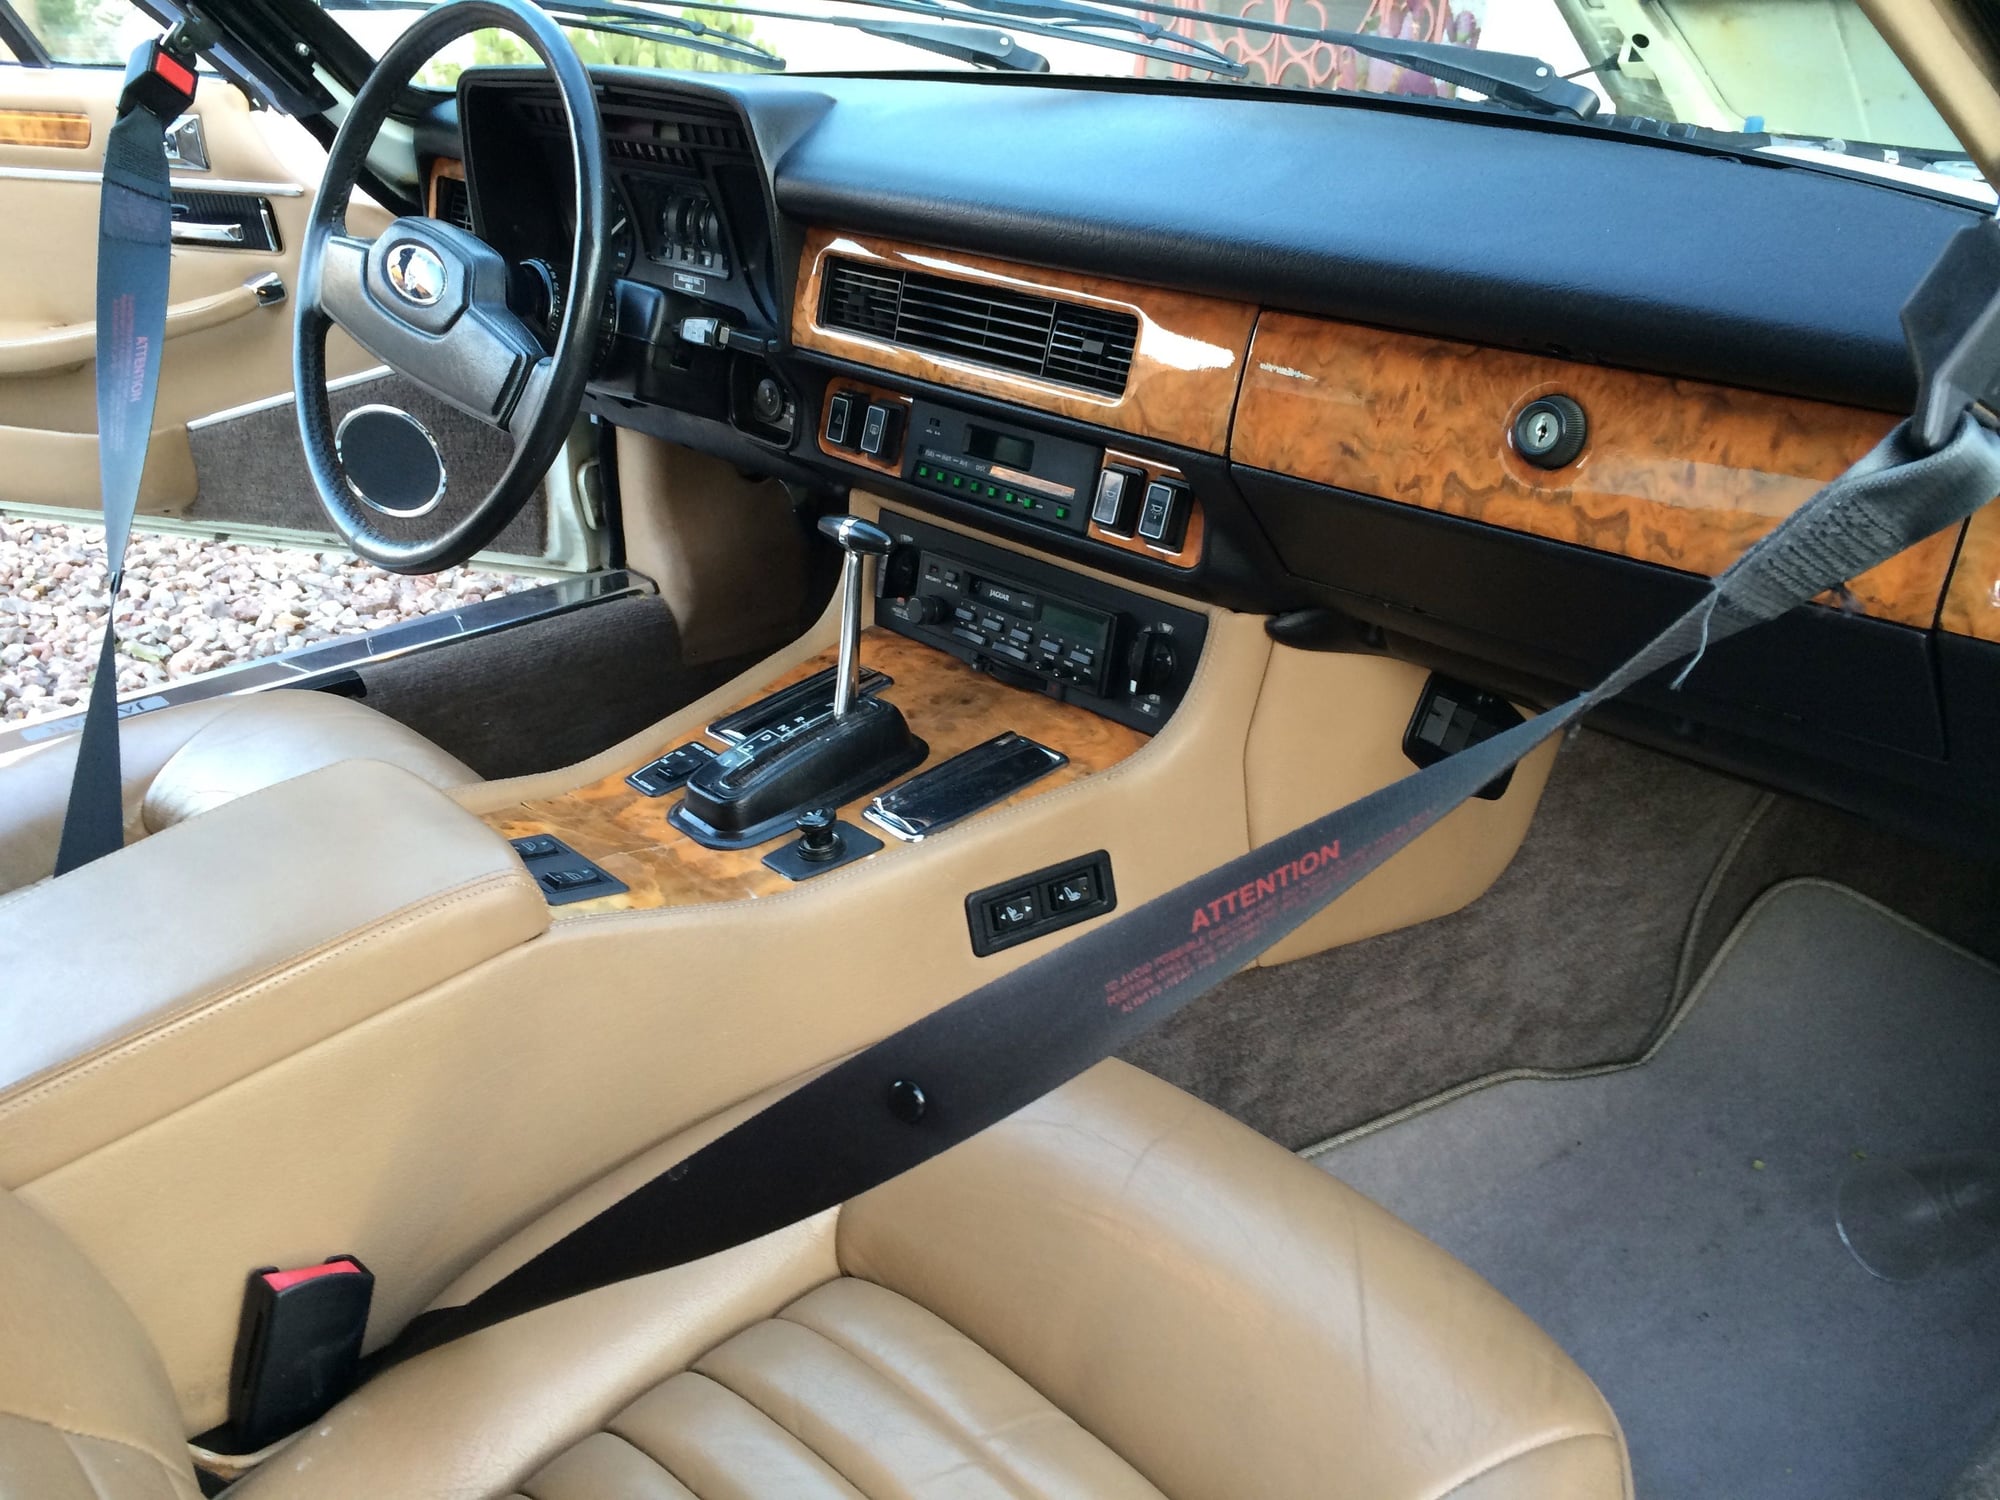 1988 Jaguar XJS - 1988 Jaguar XJS - Used - VIN SAJNA5843JC148779 - 49,000 Miles - 12 cyl - 2WD - Automatic - Coupe - White - Henderson, NV 89012, United States